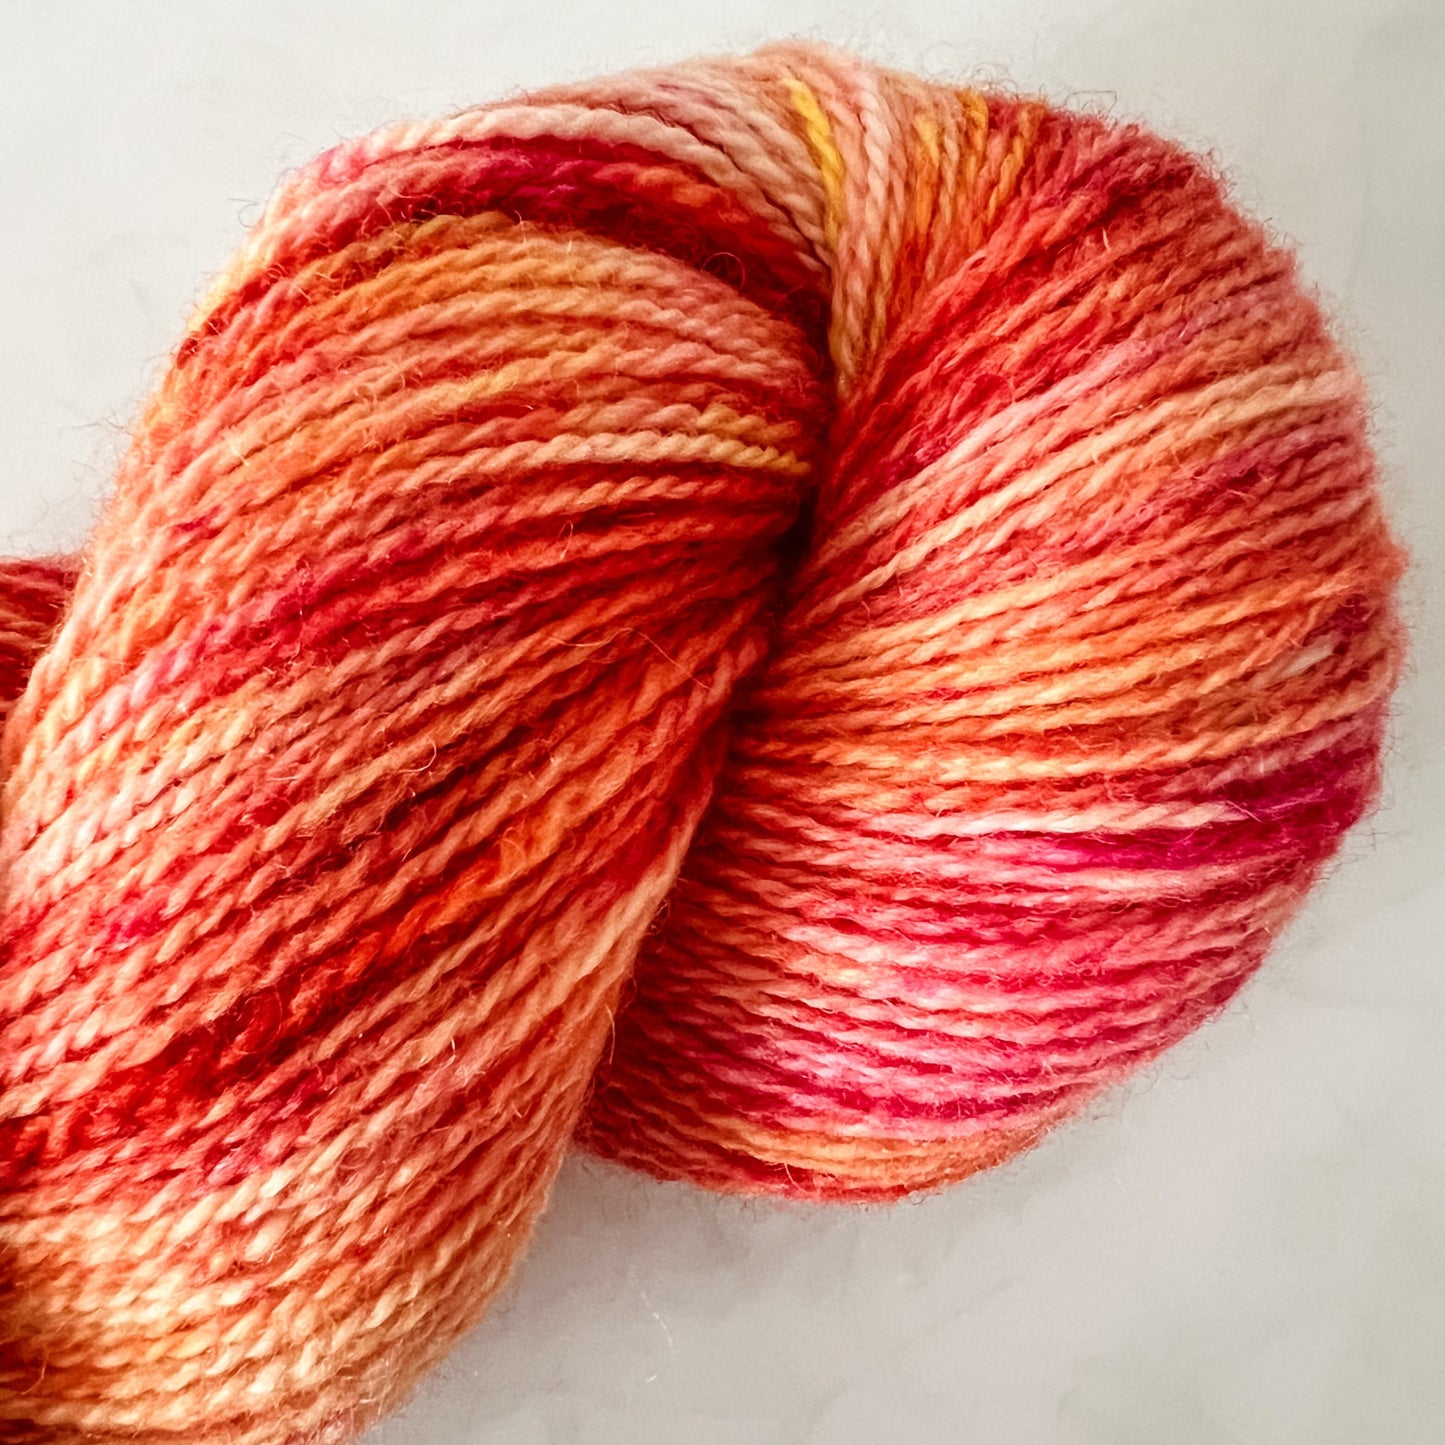 Sugar & Spice - Trollfjord sock - Hand Dyed Yarn - Variegated Yarn